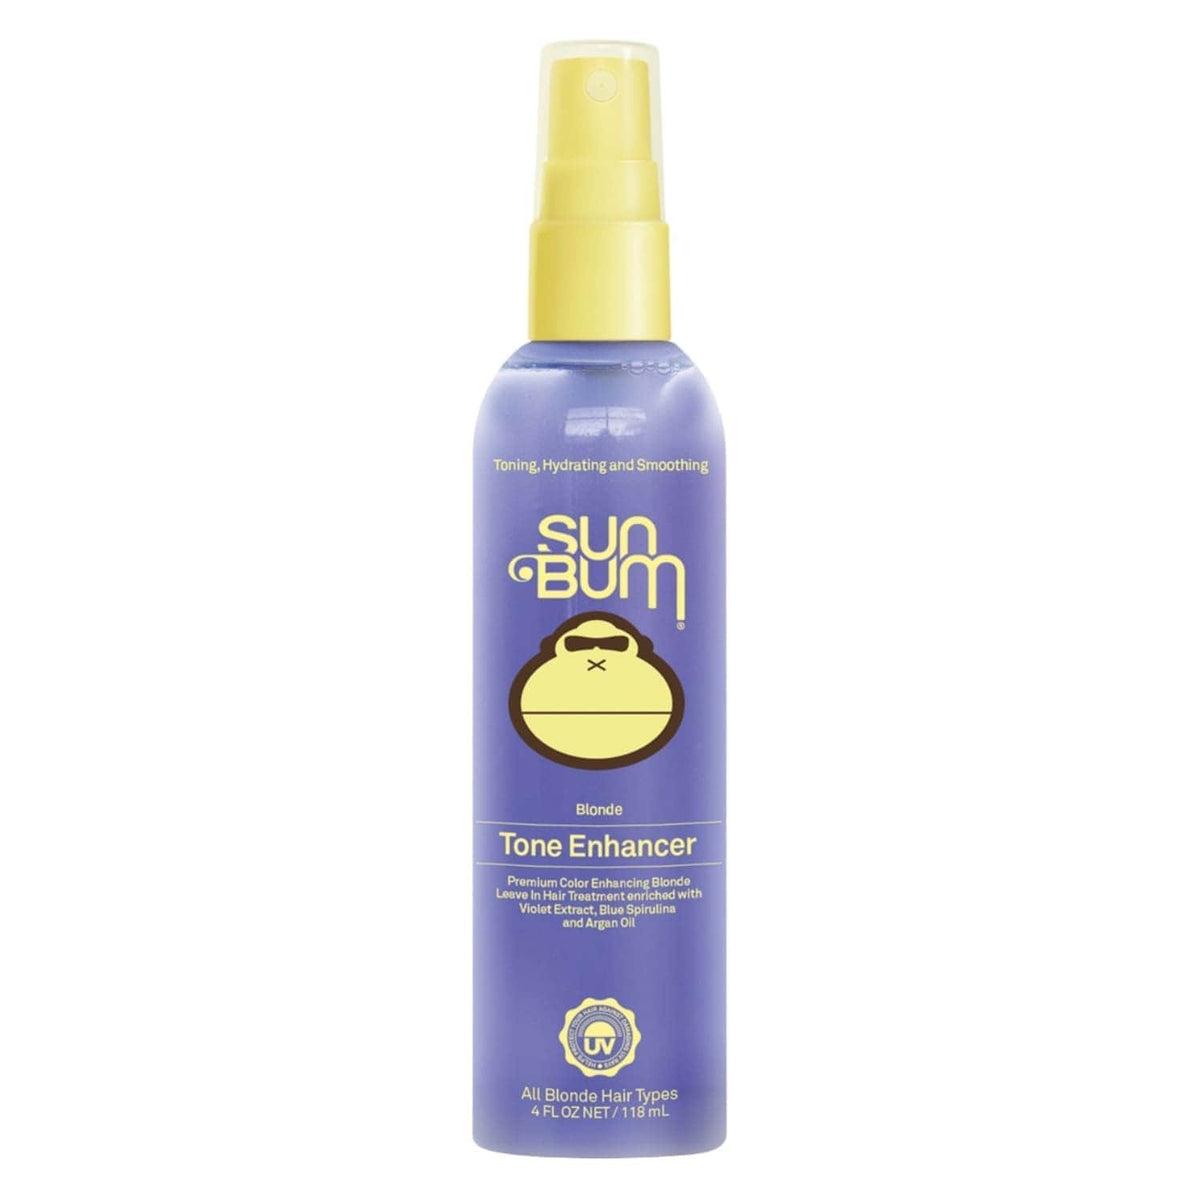 Sun Bum Blonde Tone Enhancer 118ml - Hair Treatment by Sun Bum 118ml